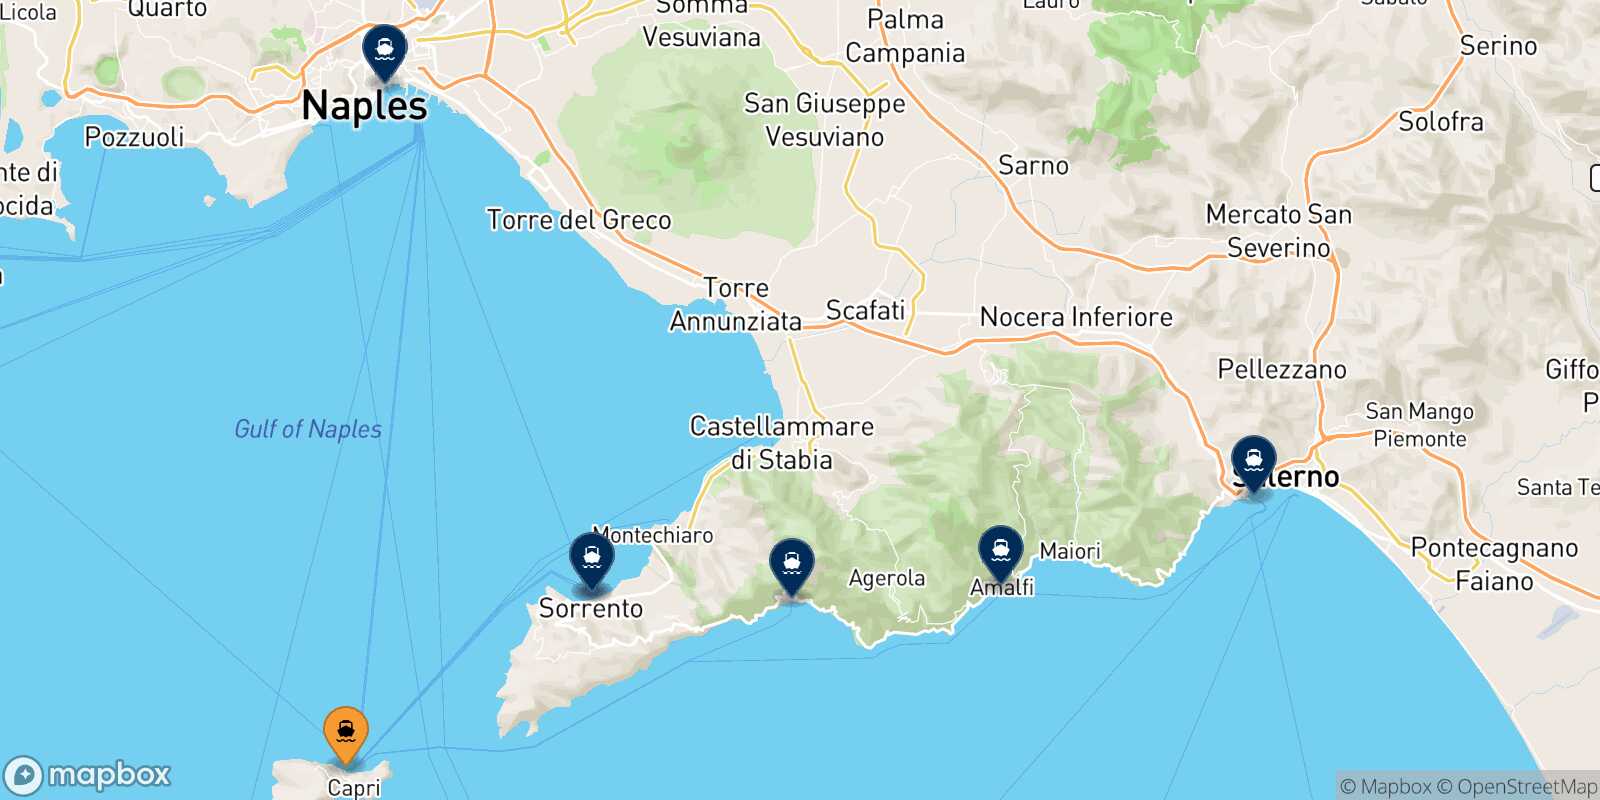 Mappa delle destinazioni raggiungibili da Capri